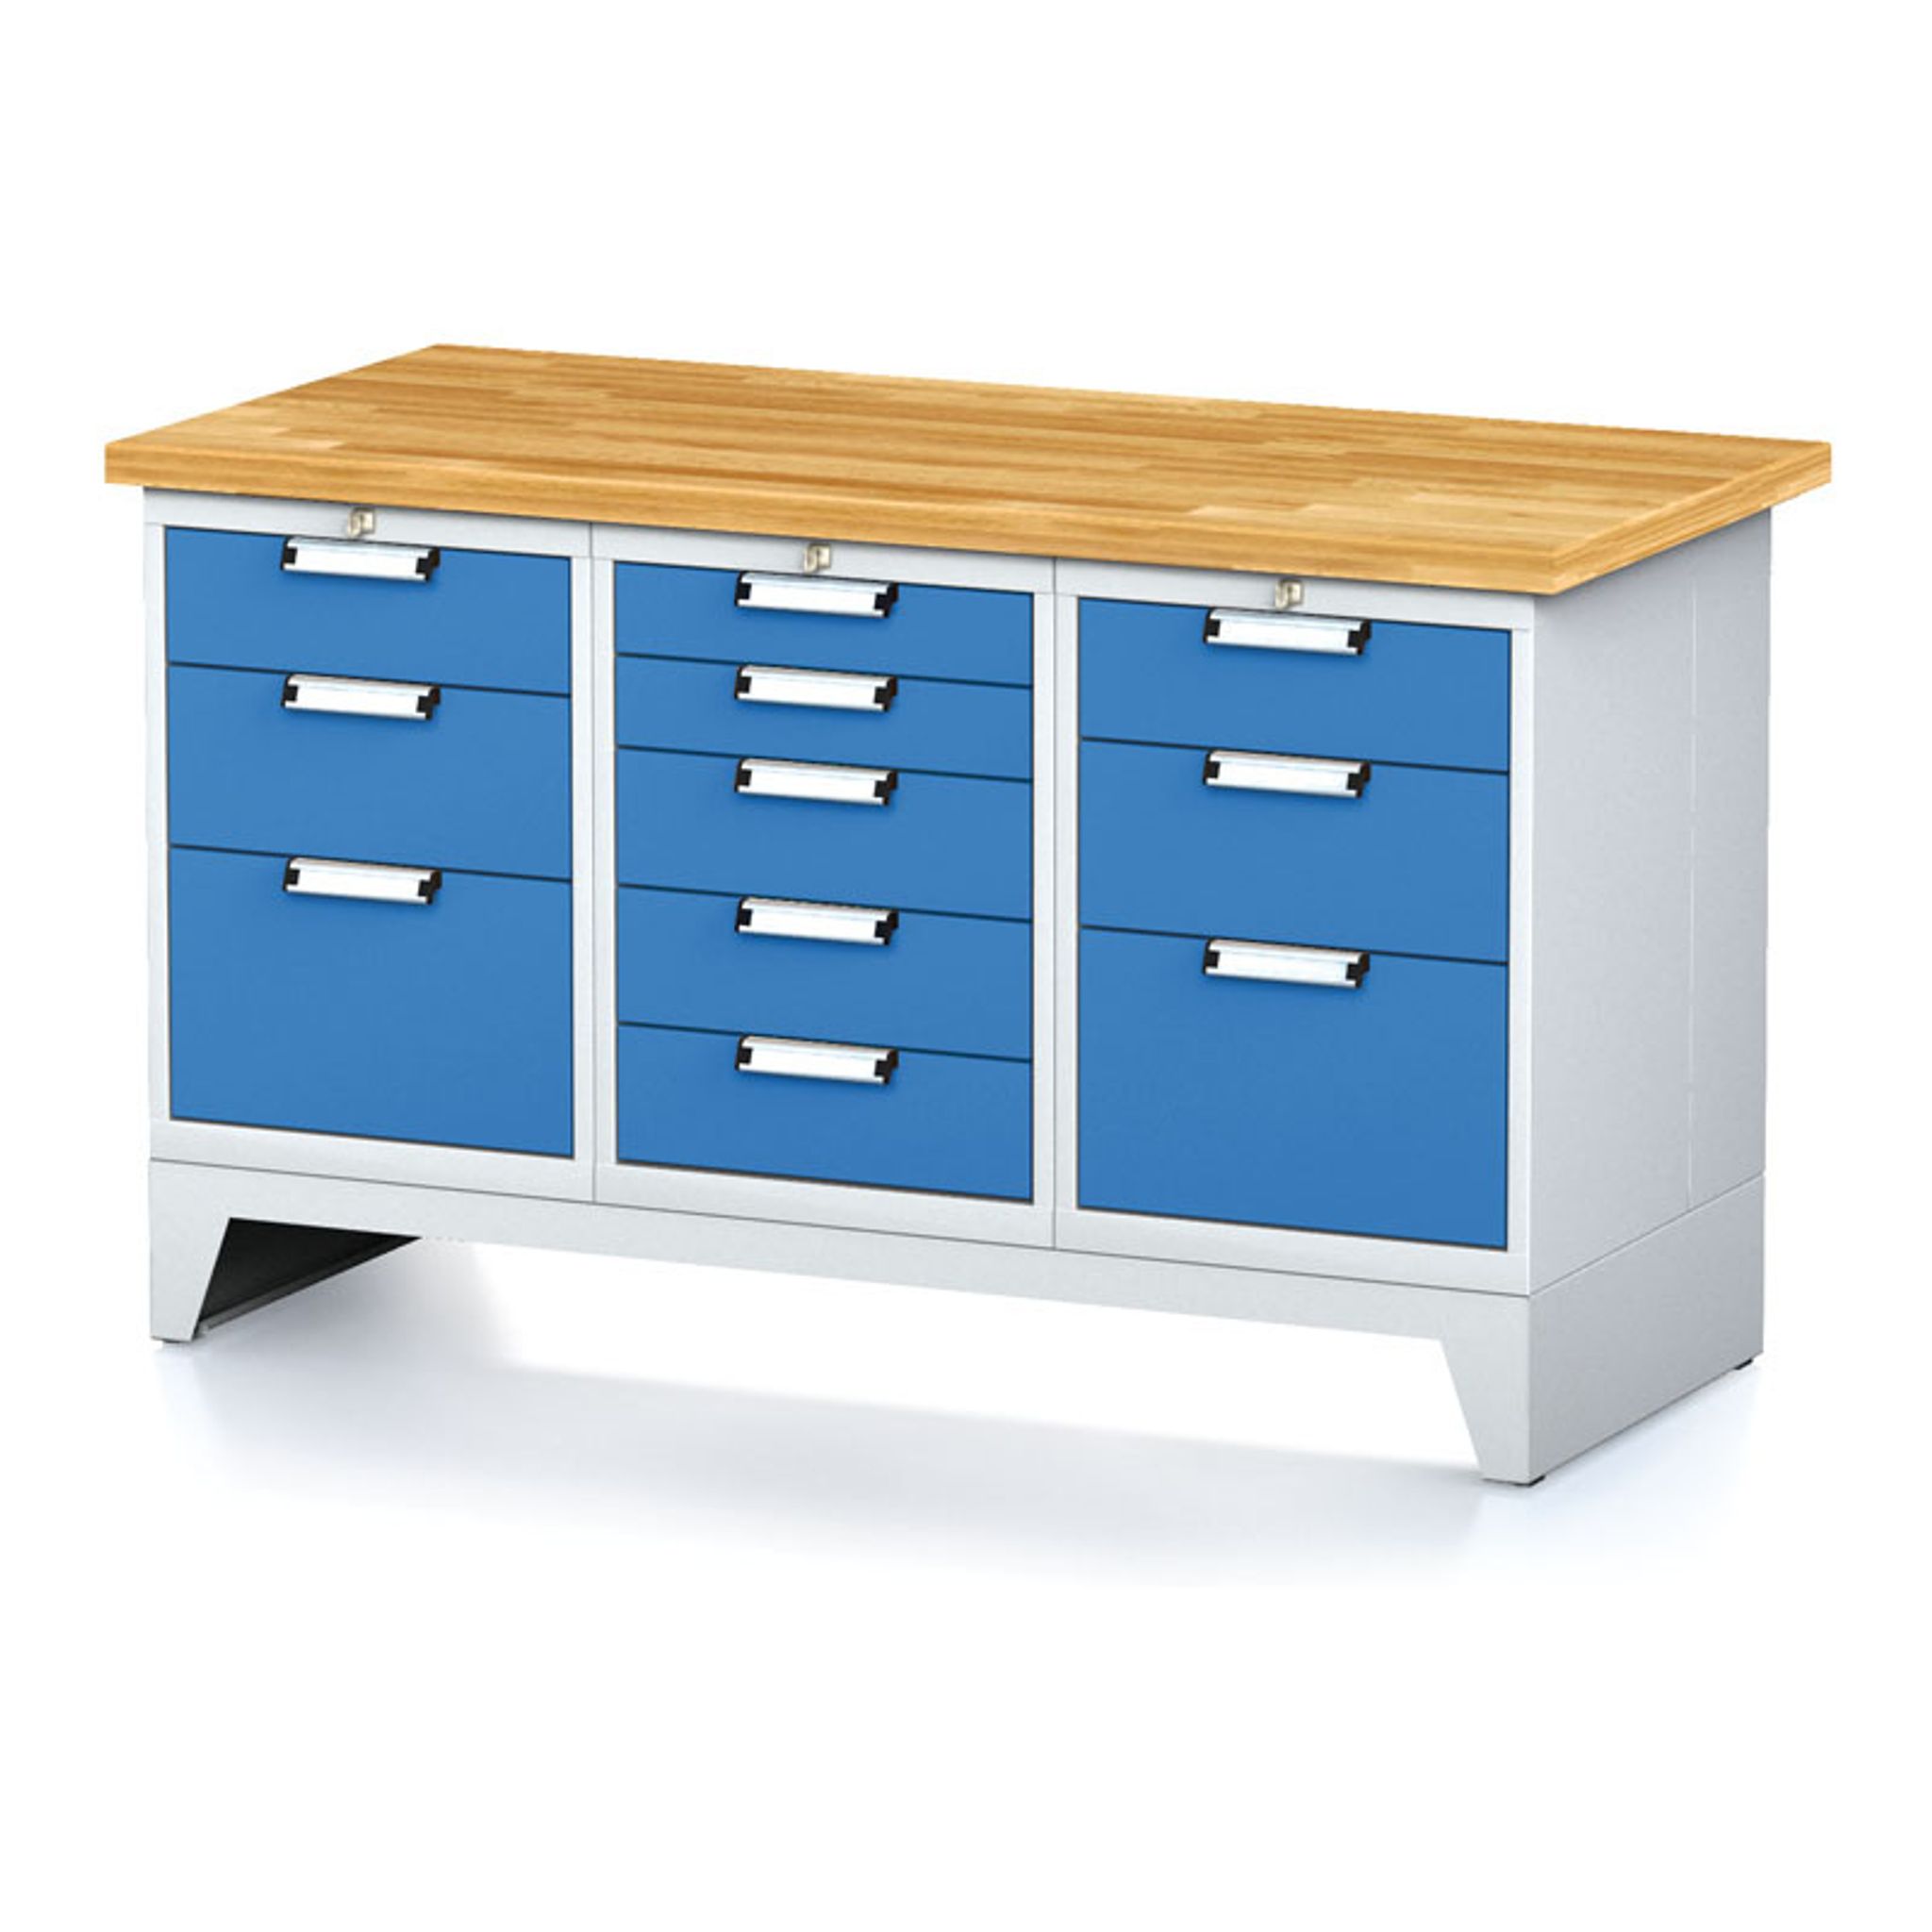 Dílenský stůl MECHANIC I, 1x 5 zásuvkový box a 2x 3 zásuvkový box na nářadí, 11 zásuvek, 1500x700x880 mm, modré dveře